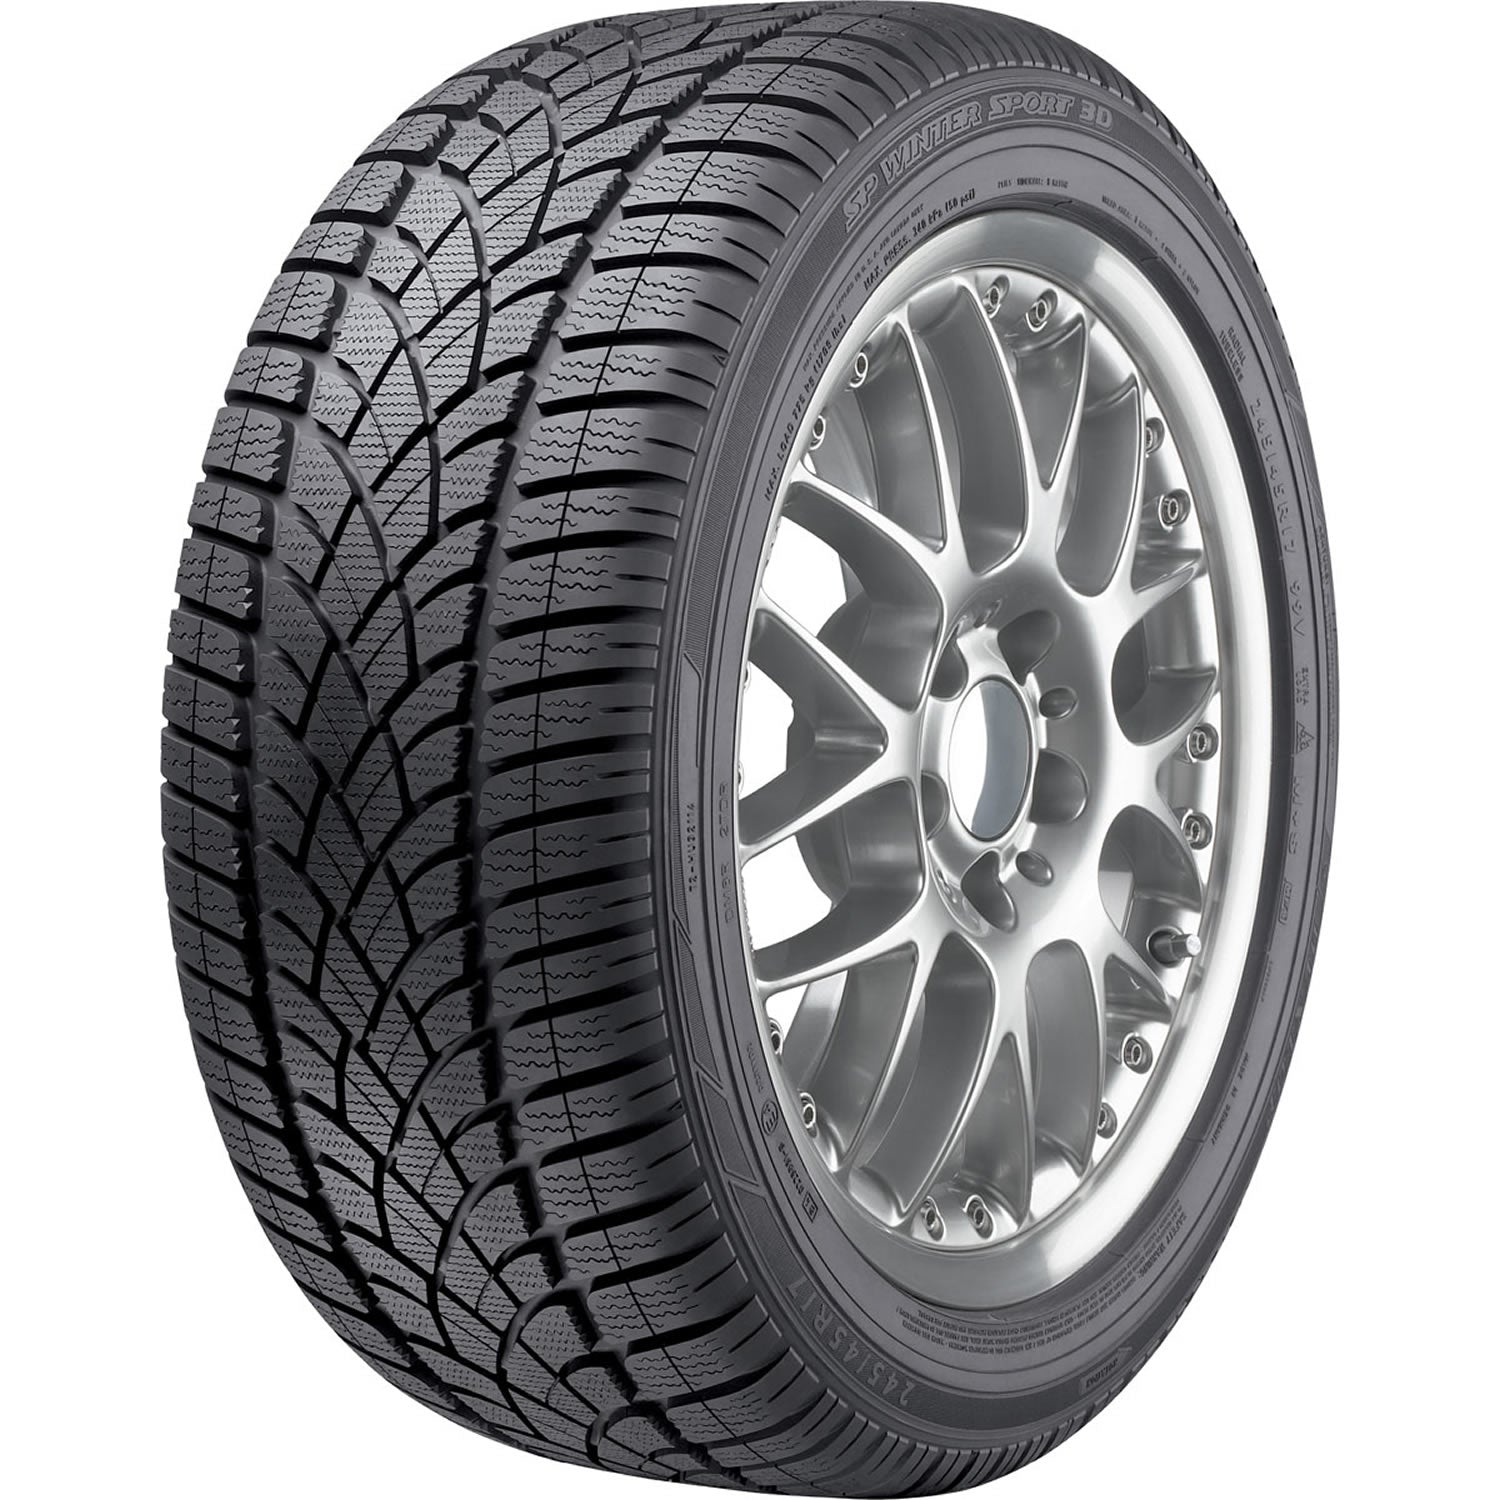 DUNLOP SP WINTER SPORT 3D 285/35R18 (25.9X11.4R 18) Tires